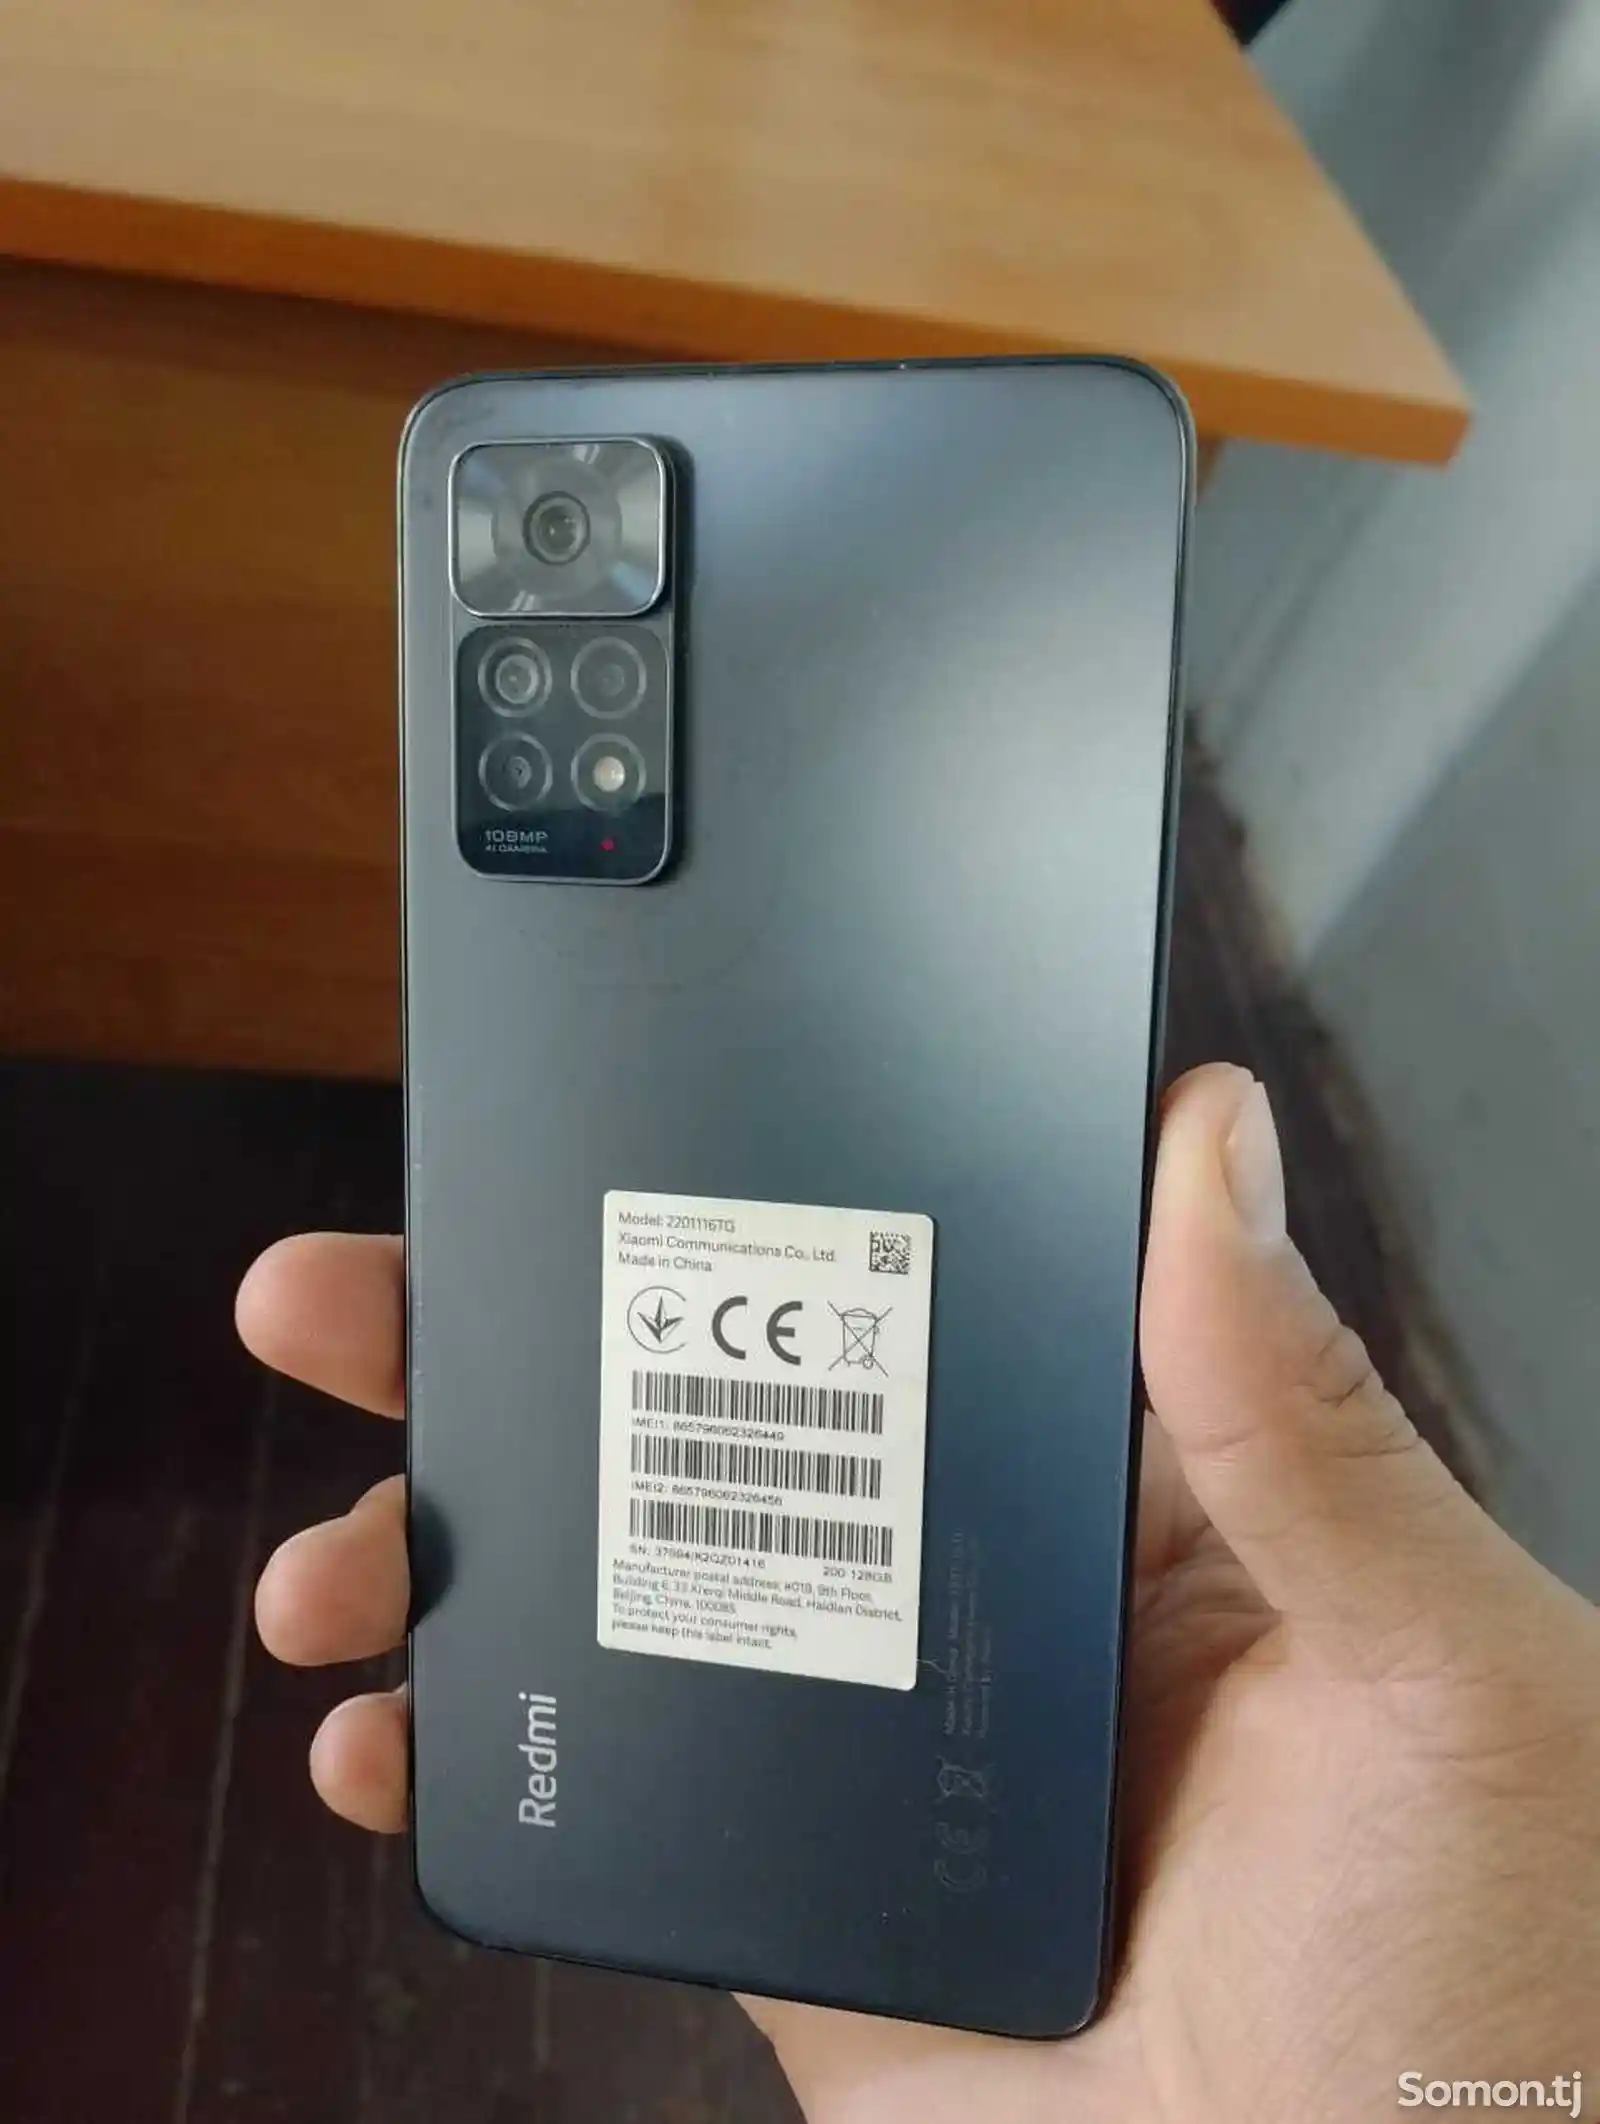 Xiaomi Redmi Note 11 Pro-1